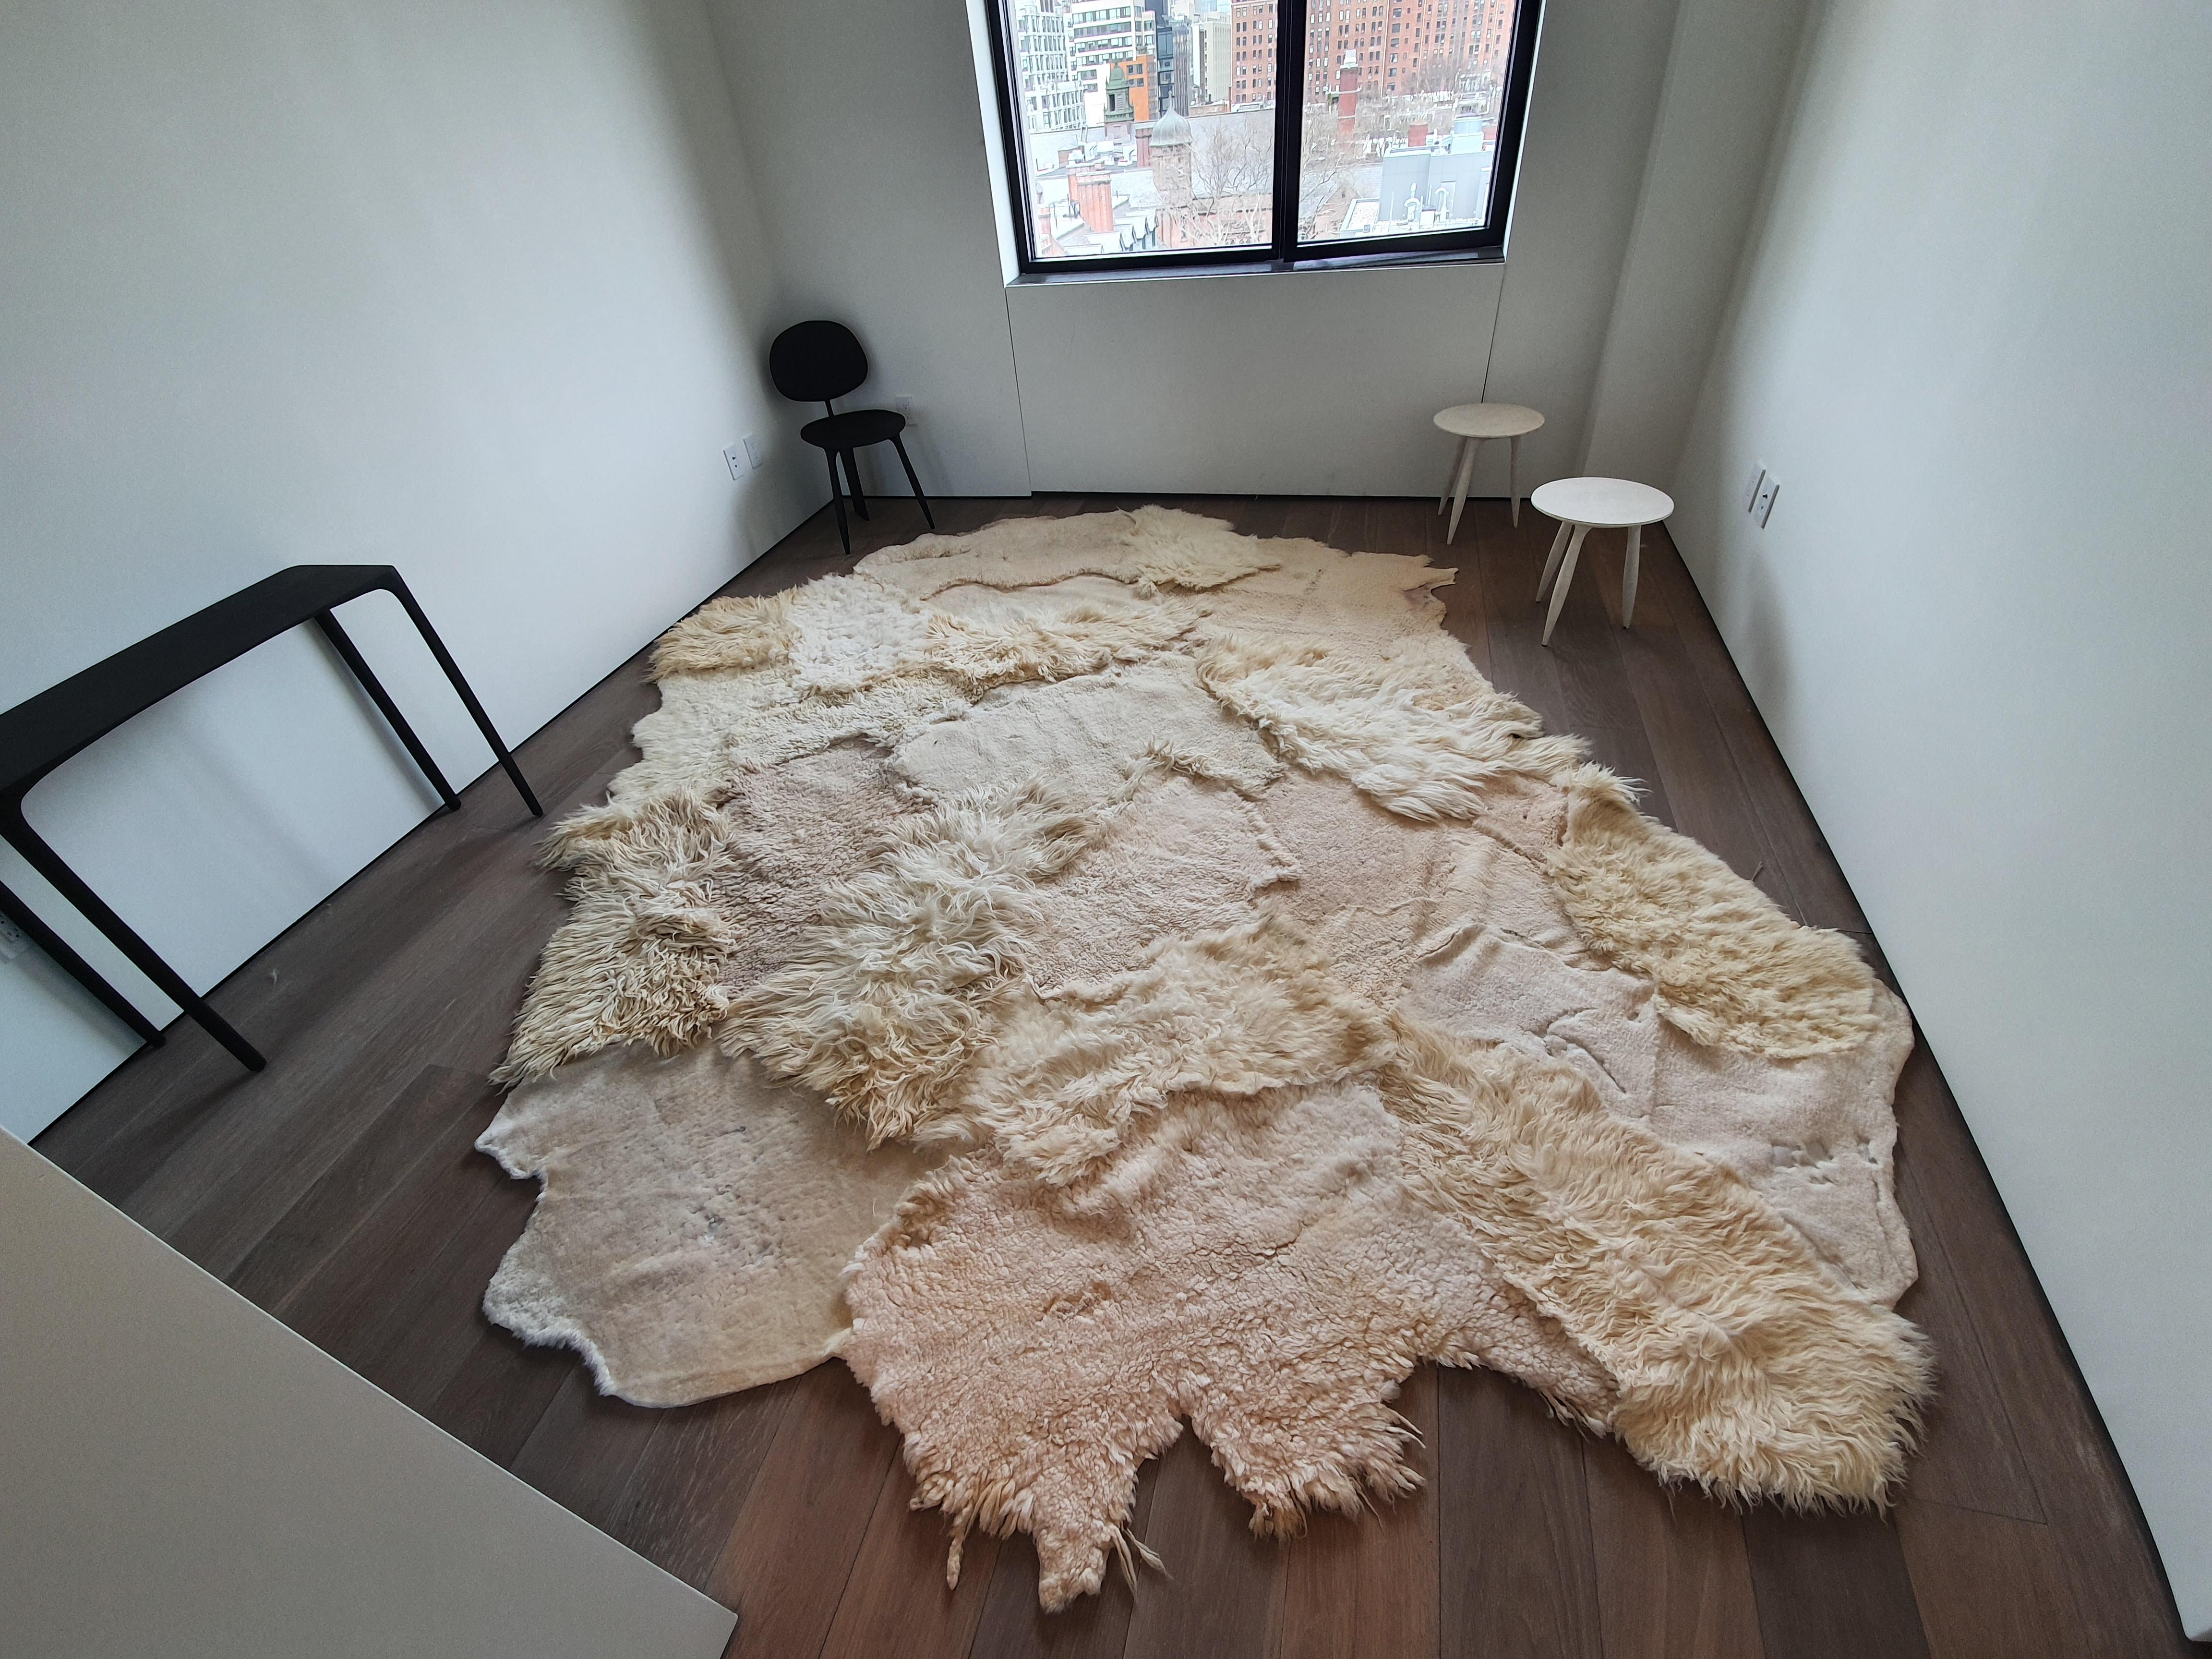 Artistik-Teppich von Carine Boxy
Abmessungen: 390 x 300 cm
MATERIALIEN: Natürlich gefärbtes Schafsfell

Jeder Teppich ist anders und einzigartig. Bitte kontaktieren Sie uns, um die Maße zu erfahren.
Carine Boxy ist international für ihre kunstvollen